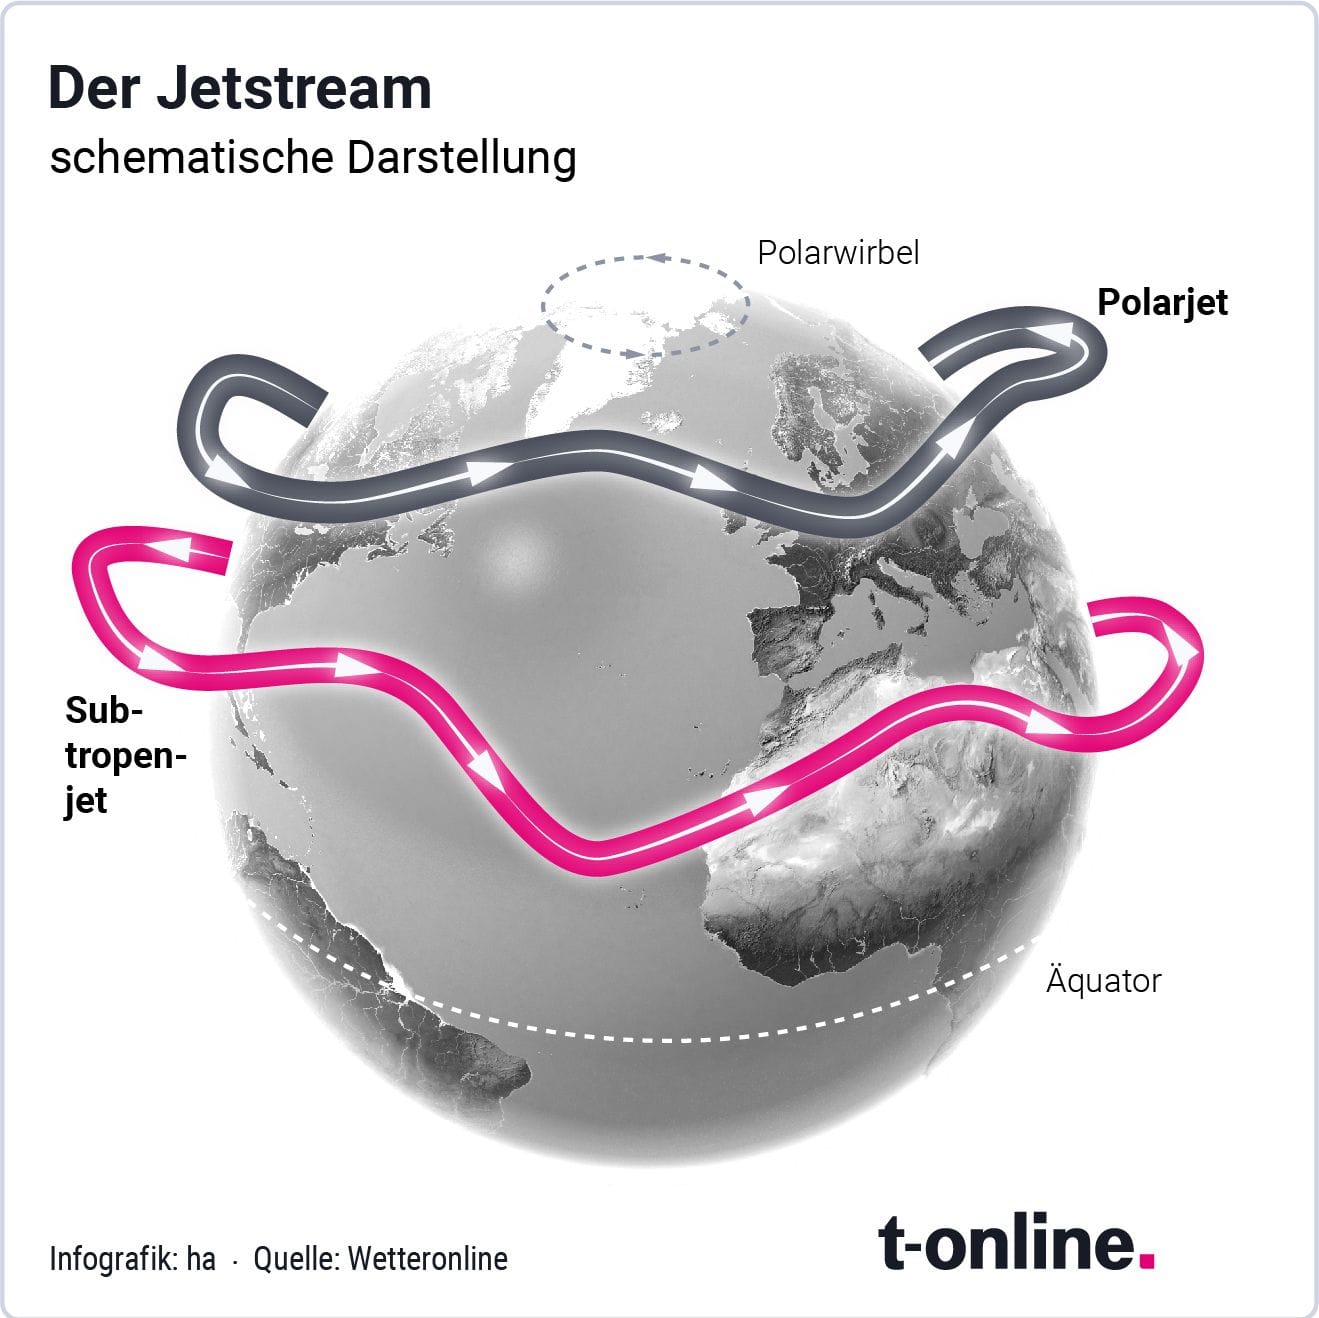 Der Jetstream: schematische Darstellung